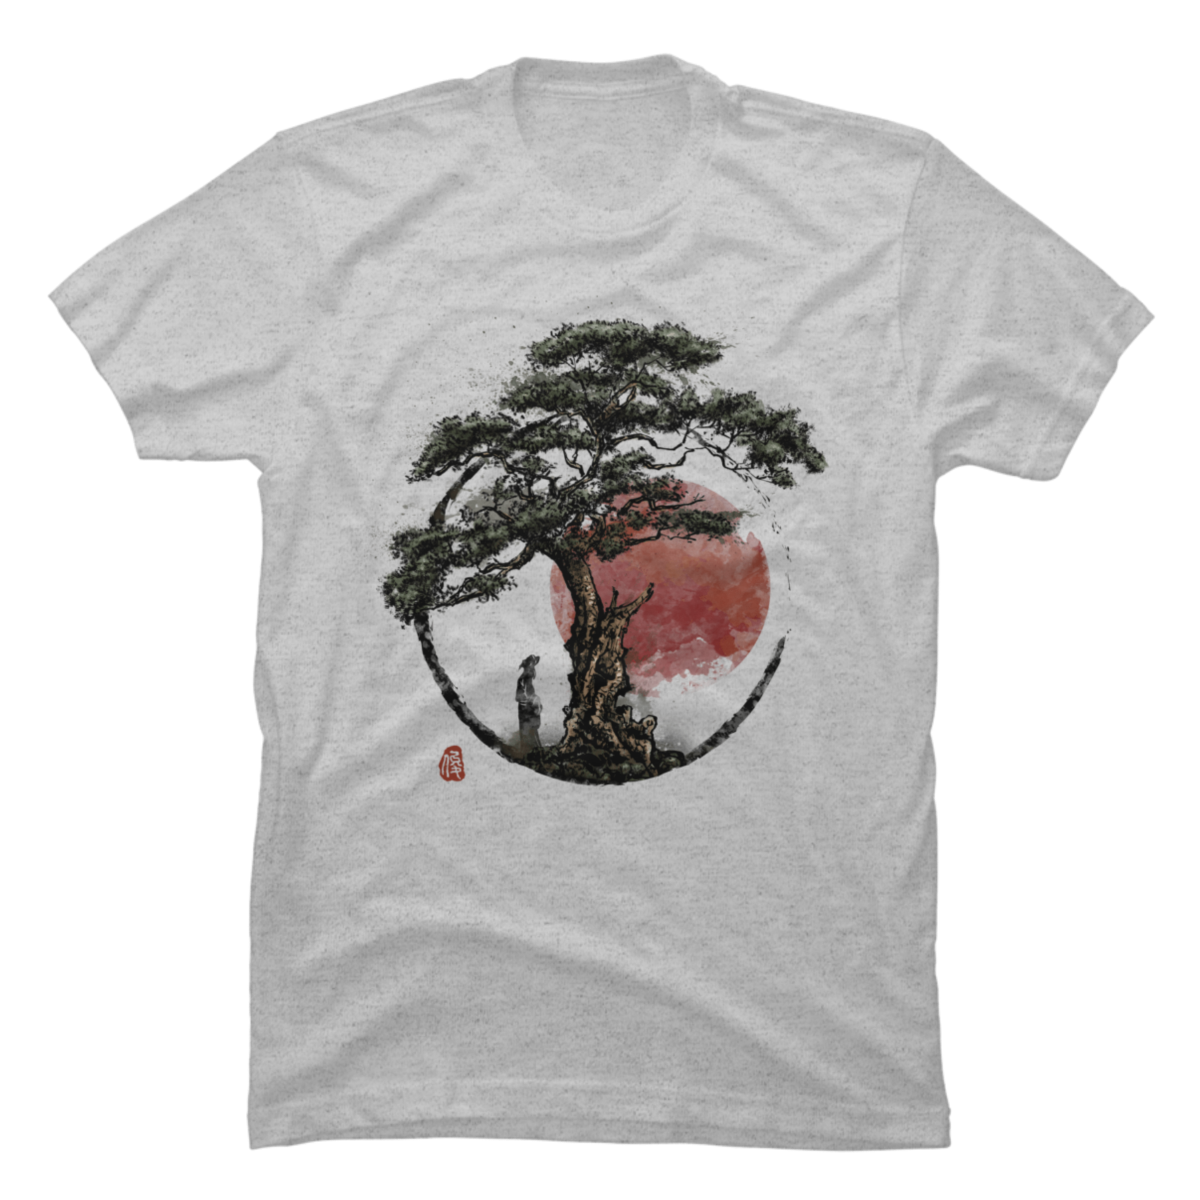 sunset t shirt design